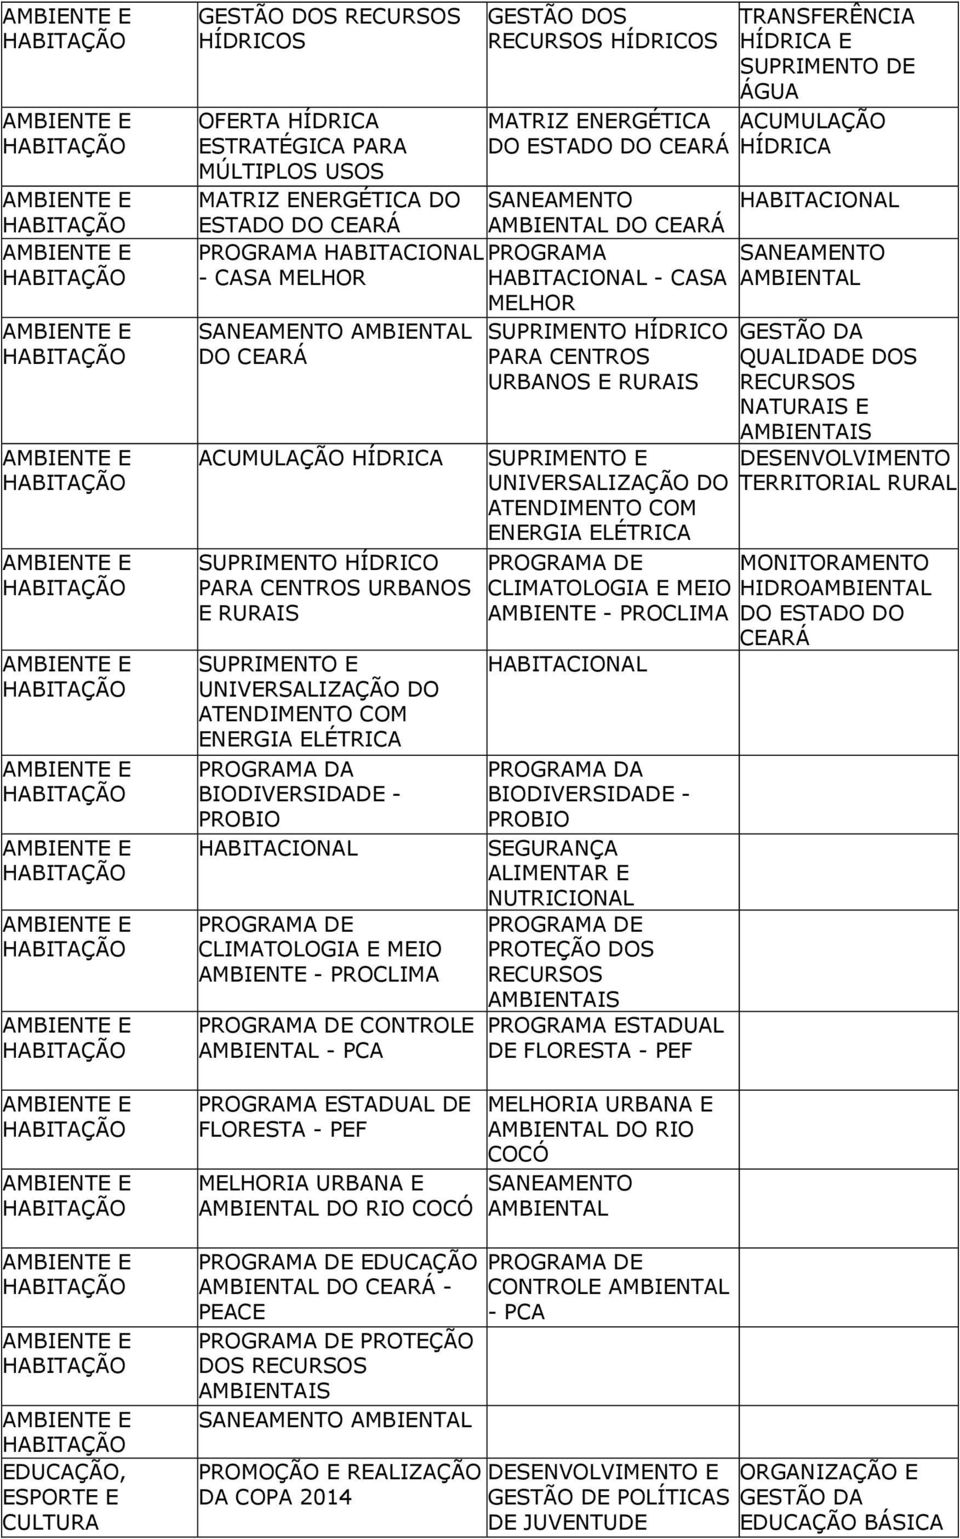 AMBIENTE - PROCLIMA PROGRAMA DE CONTROLE AMBIENTAL - PCA PROGRAMA ESTADUAL DE FLORESTA - PEF MELHORIA URBANA E AMBIENTAL DO RIO COCÓ PROGRAMA DE EDUCAÇÃO AMBIENTAL DO CEARÁ - PEACE PROGRAMA DE